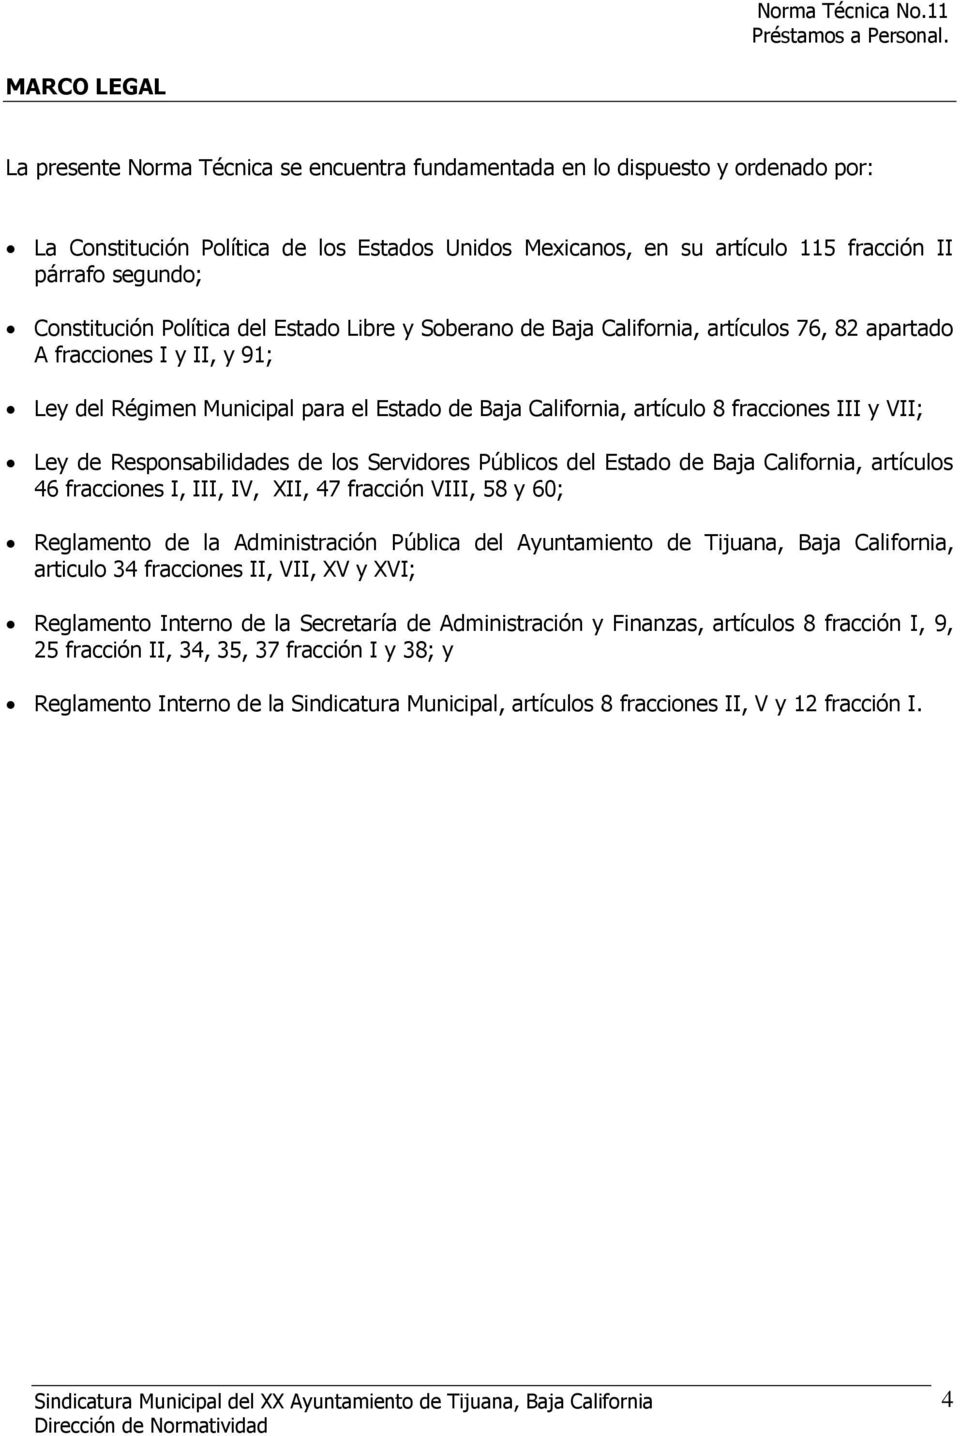 fracciones III y VII; Ley de Responsabilidades de los Servidores Públicos del Estado de Baja California, artículos 46 fracciones I, III, IV, XII, 47 fracción VIII, 58 y 60; Reglamento de la